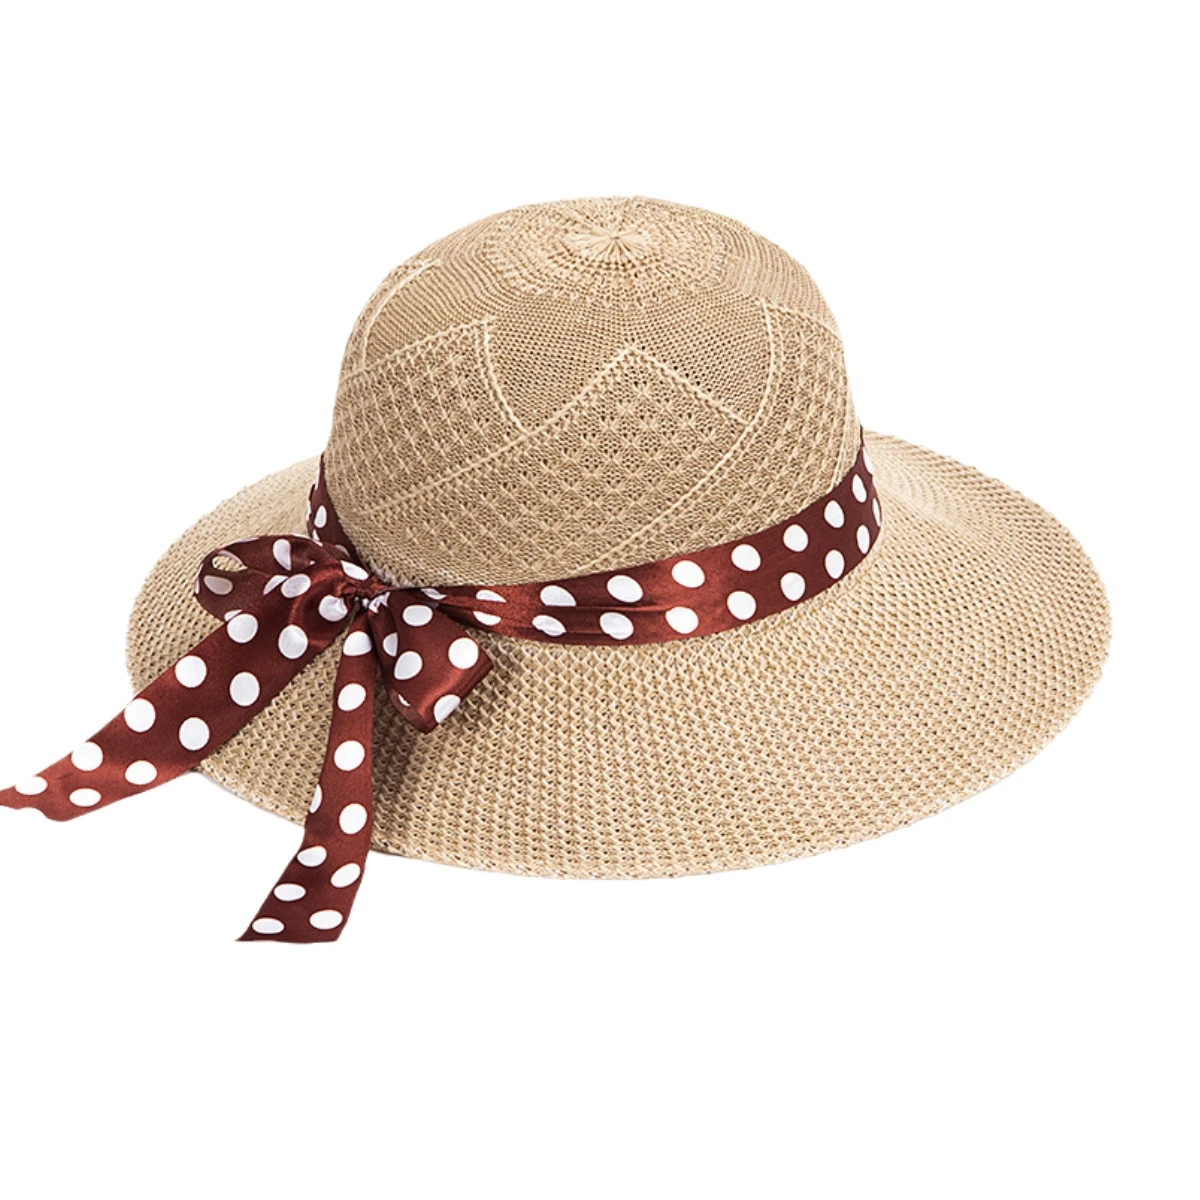 女性のための弓付き折りたたみ式麦わら帽子、女の子のための広いつばのビーチハット、海辺の旅行のサンキャップ、UV保護女性のキャップ、日焼け止め、夏